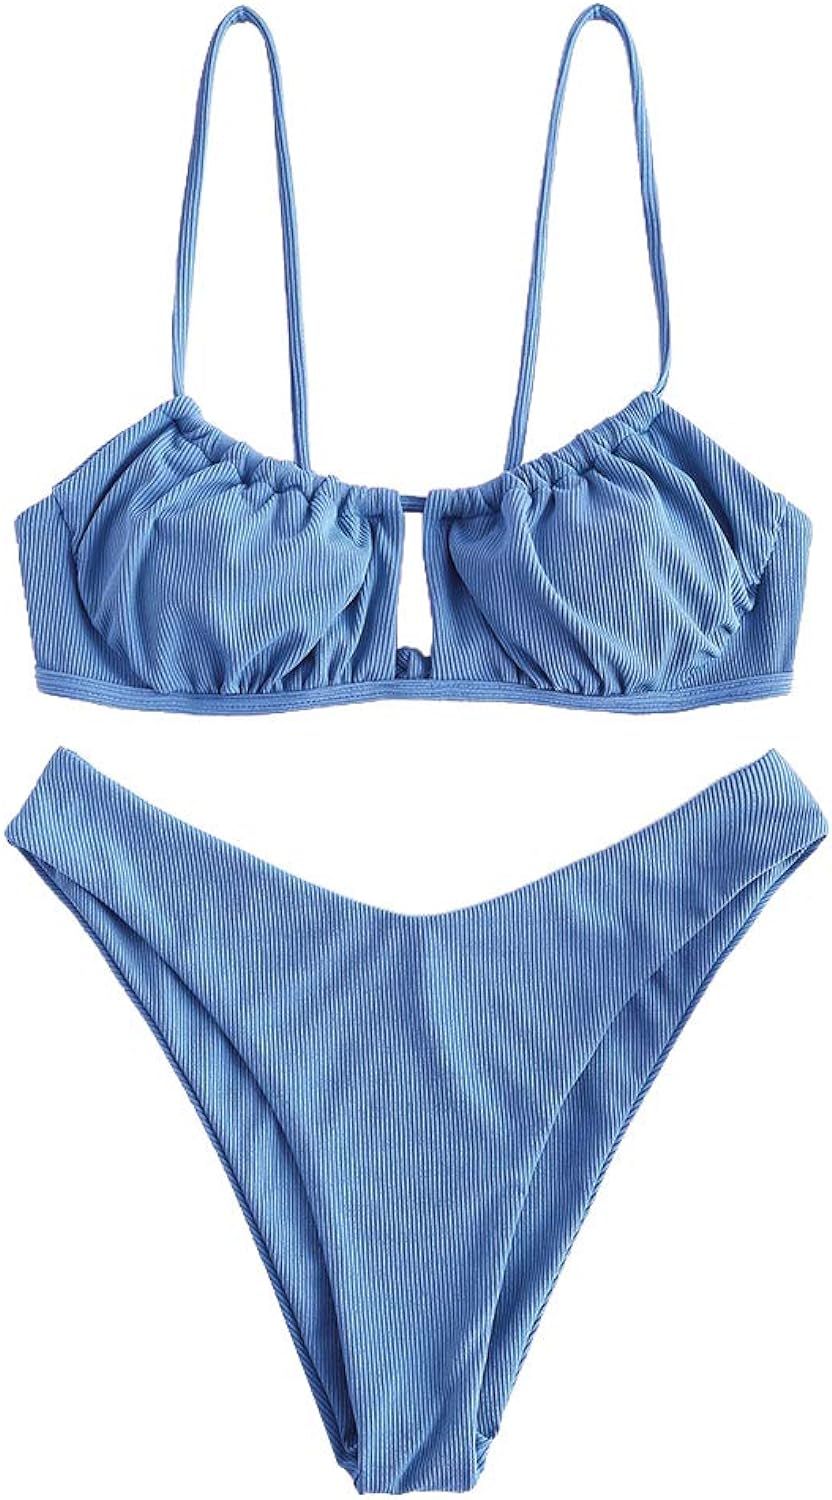 ZAFUL Women's Spaghetti Strap Cutout Keyhole Ruched Tie Cami Bikini Set Swimsuit | Amazon (US)